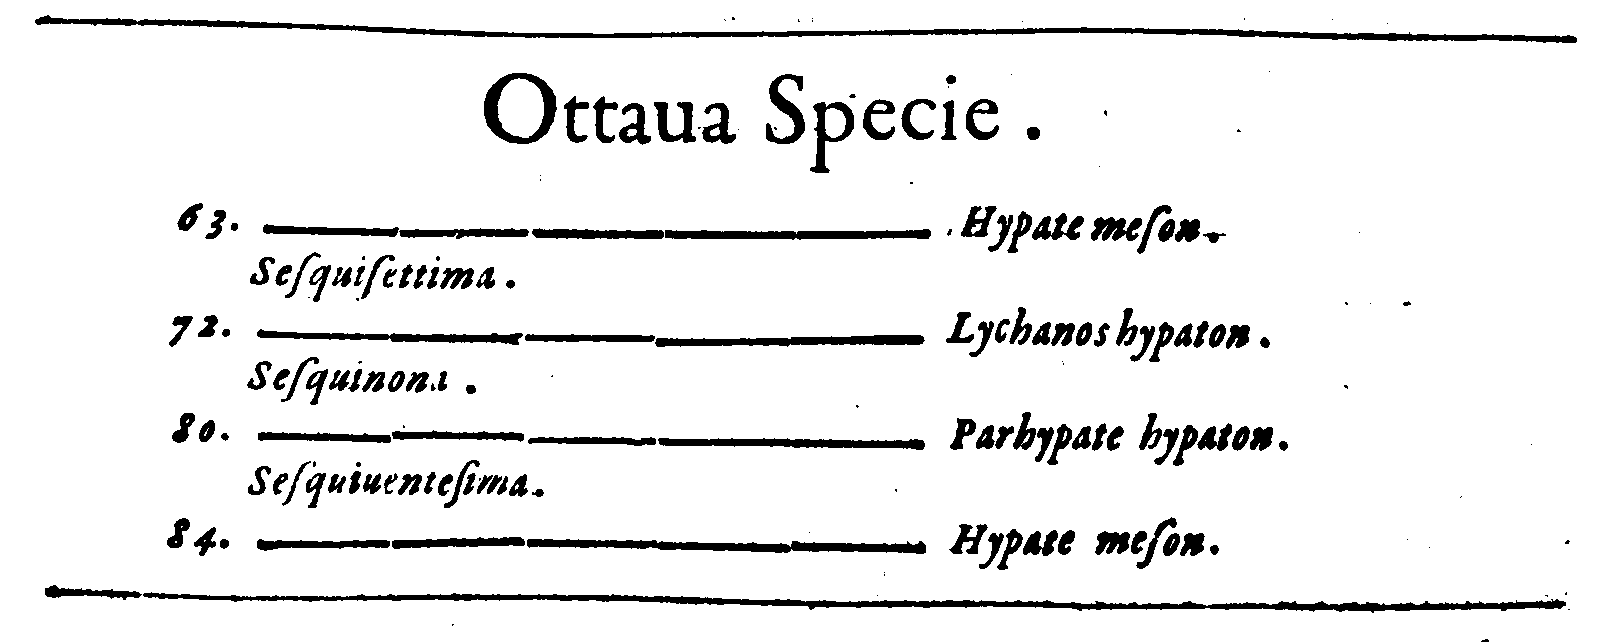 Ottaua Specie.
63. ——— Hypate meson.
Sesquisettima.
72. ——— Lychanos hypaton.
Sesquinona.
80. ——— Parhypate hypaton.
Sesquiuentesima.
84. ——— Hypate .